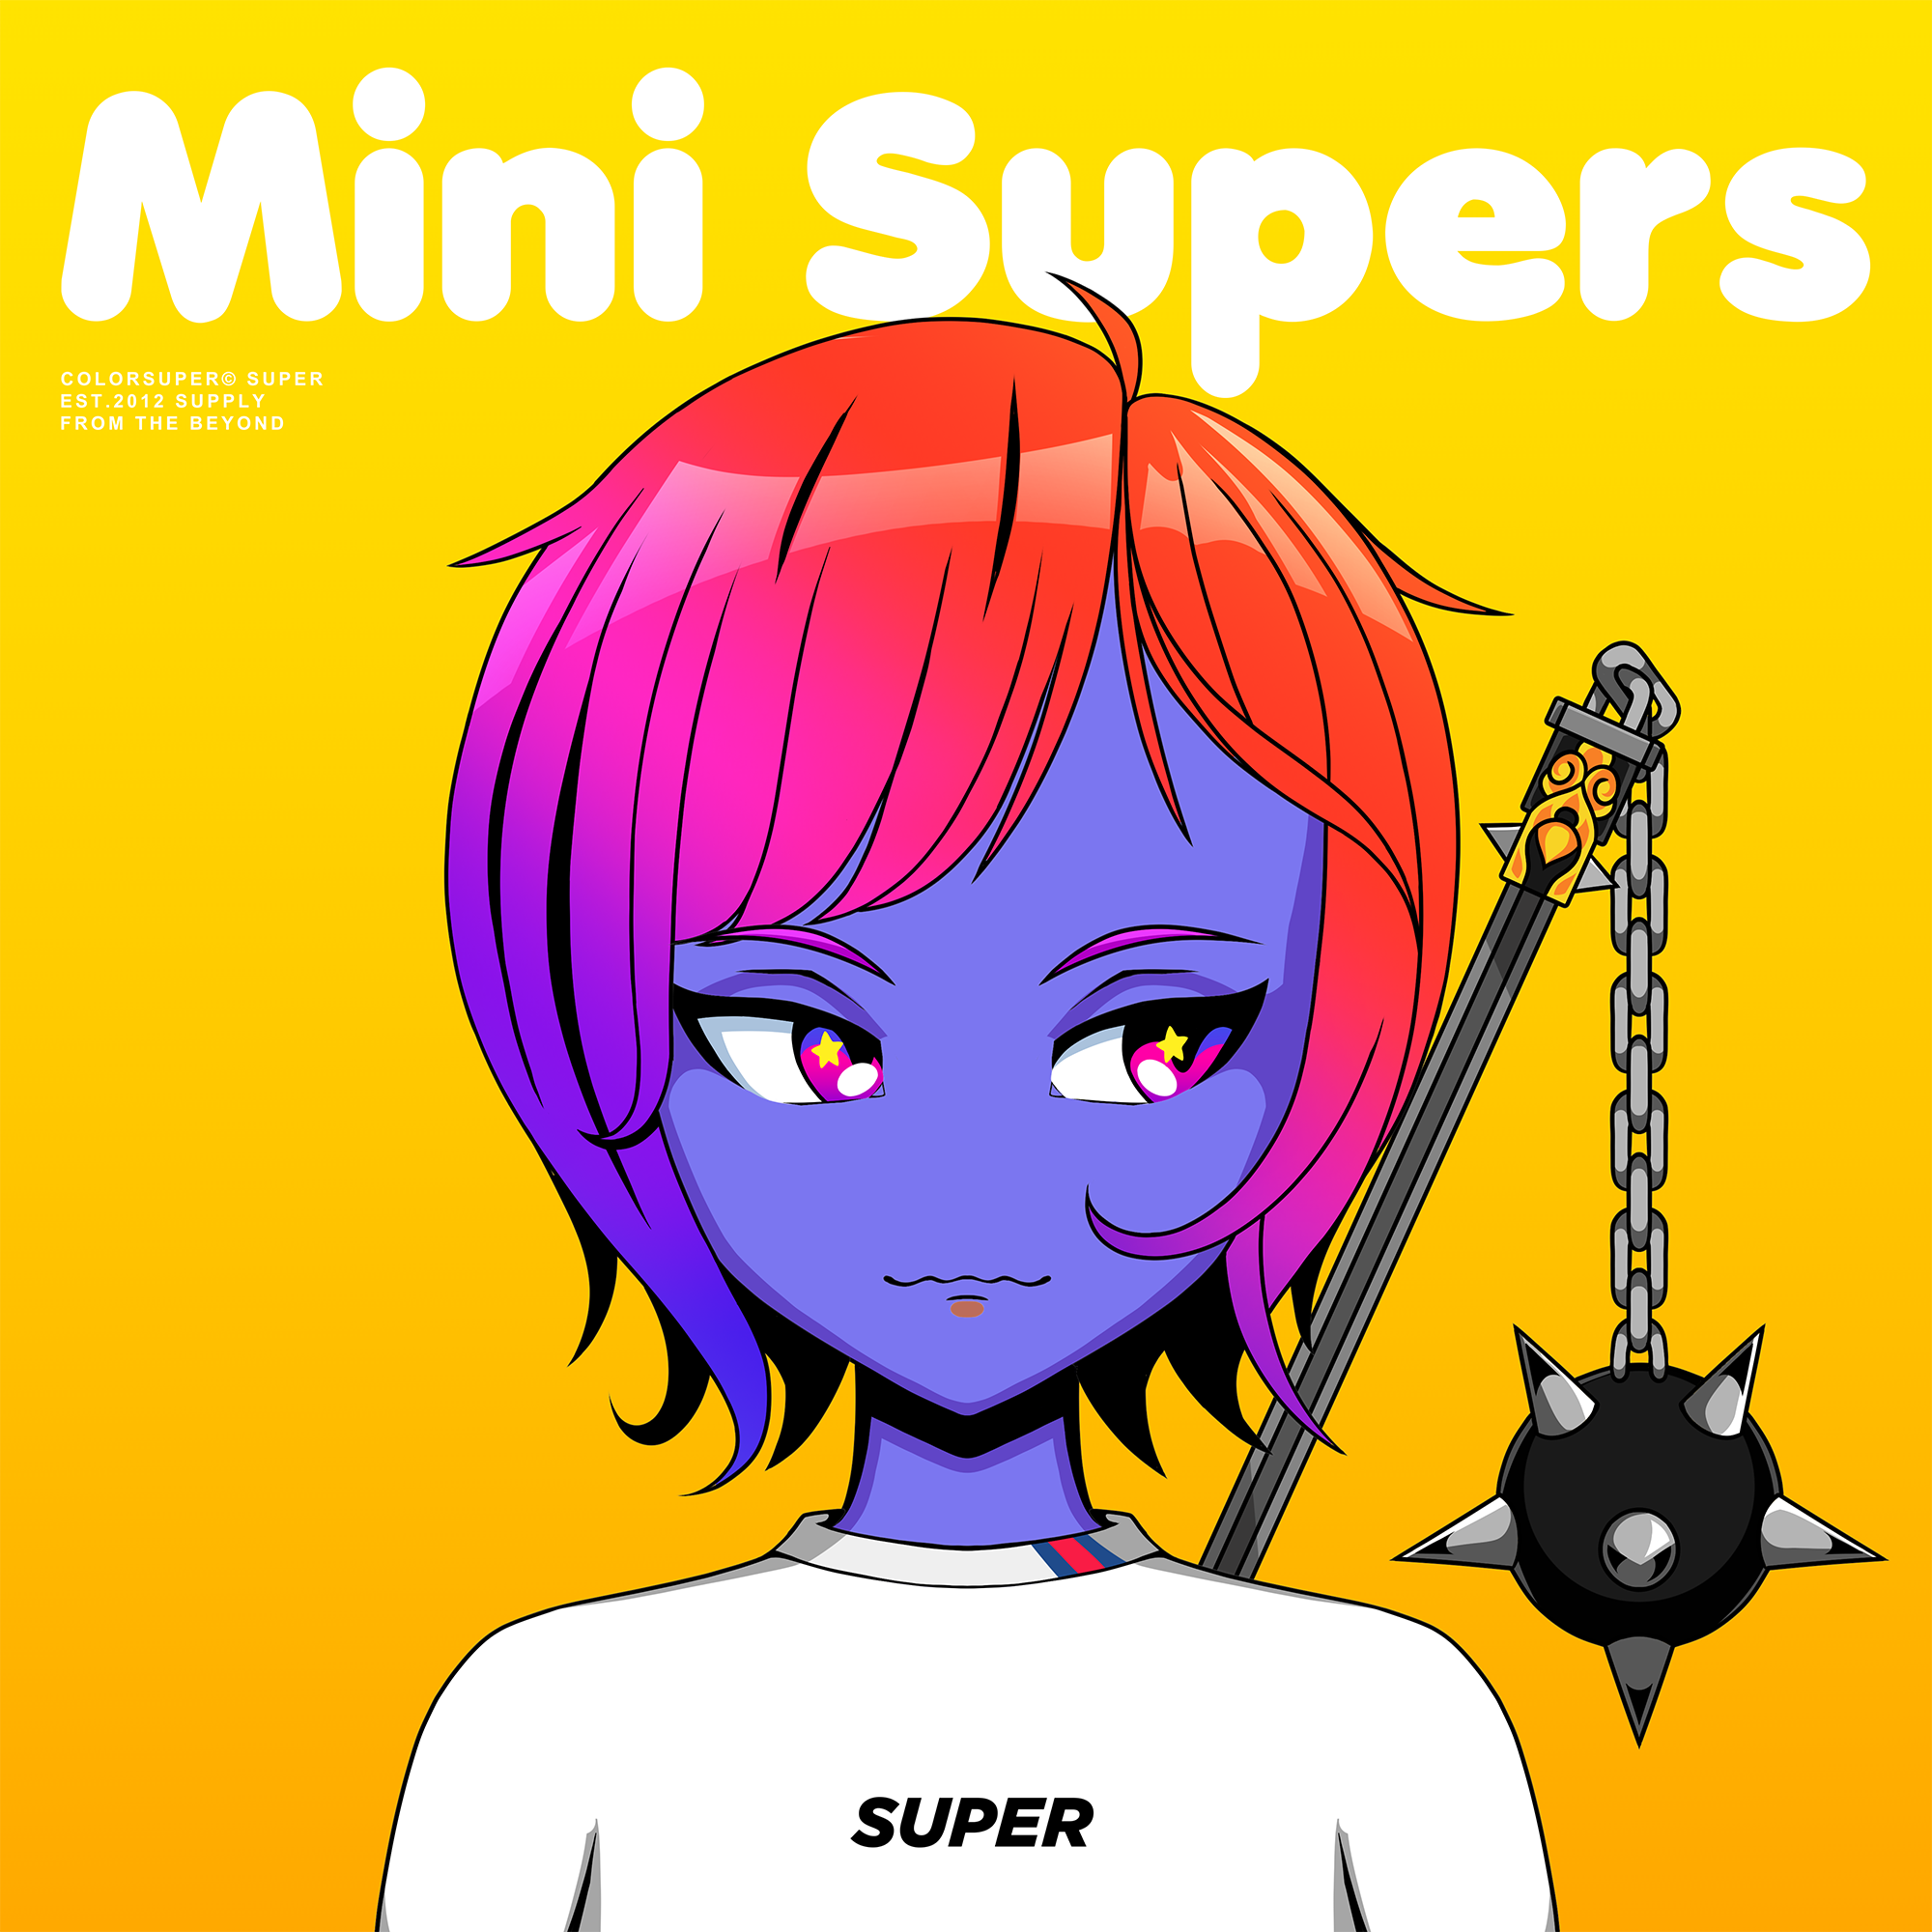 Mini supers sample #1